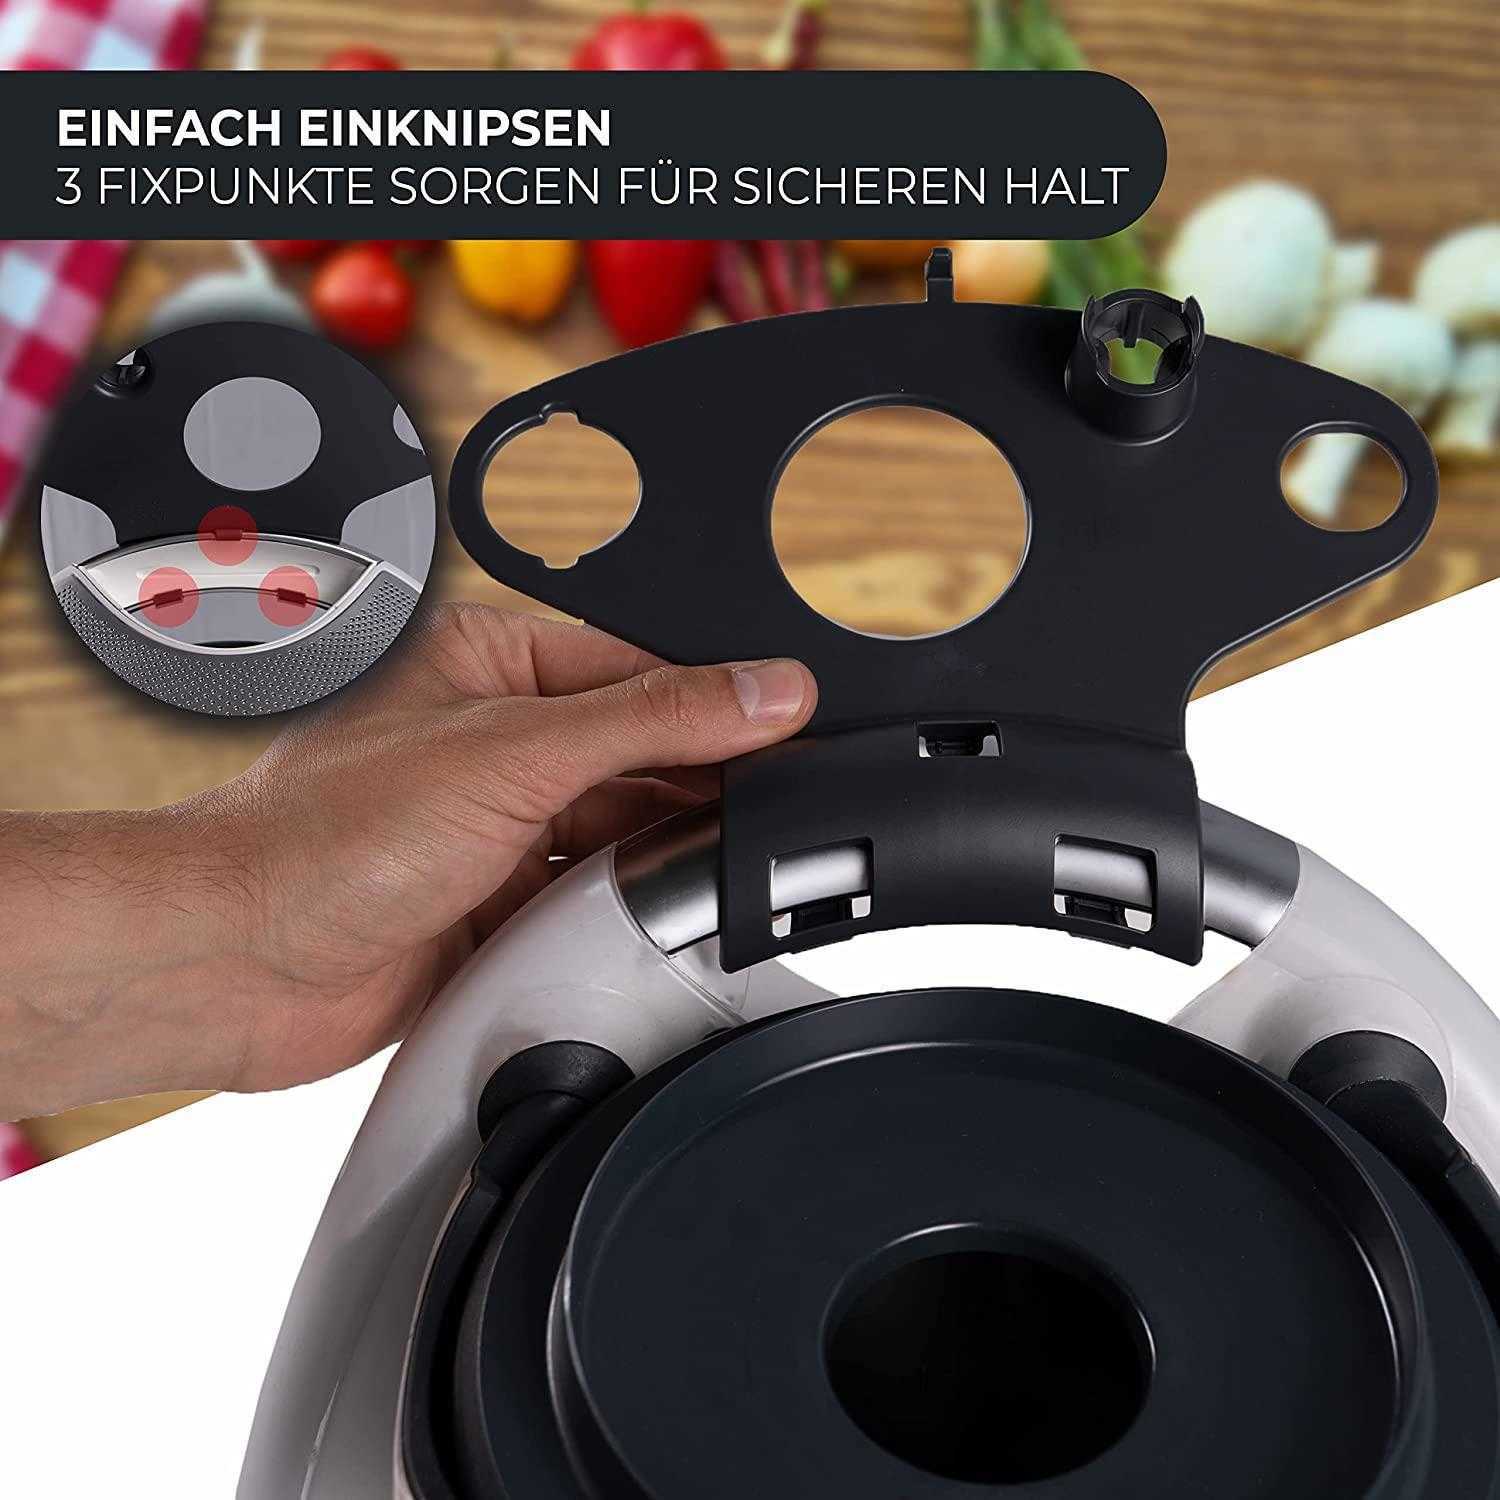 Nouveau support de stockage de cuisine support de stockage d'outil de cuisson support d'accessoires de robot culinaire de cuisine support d'accessoires Thermomix TM5 TM6